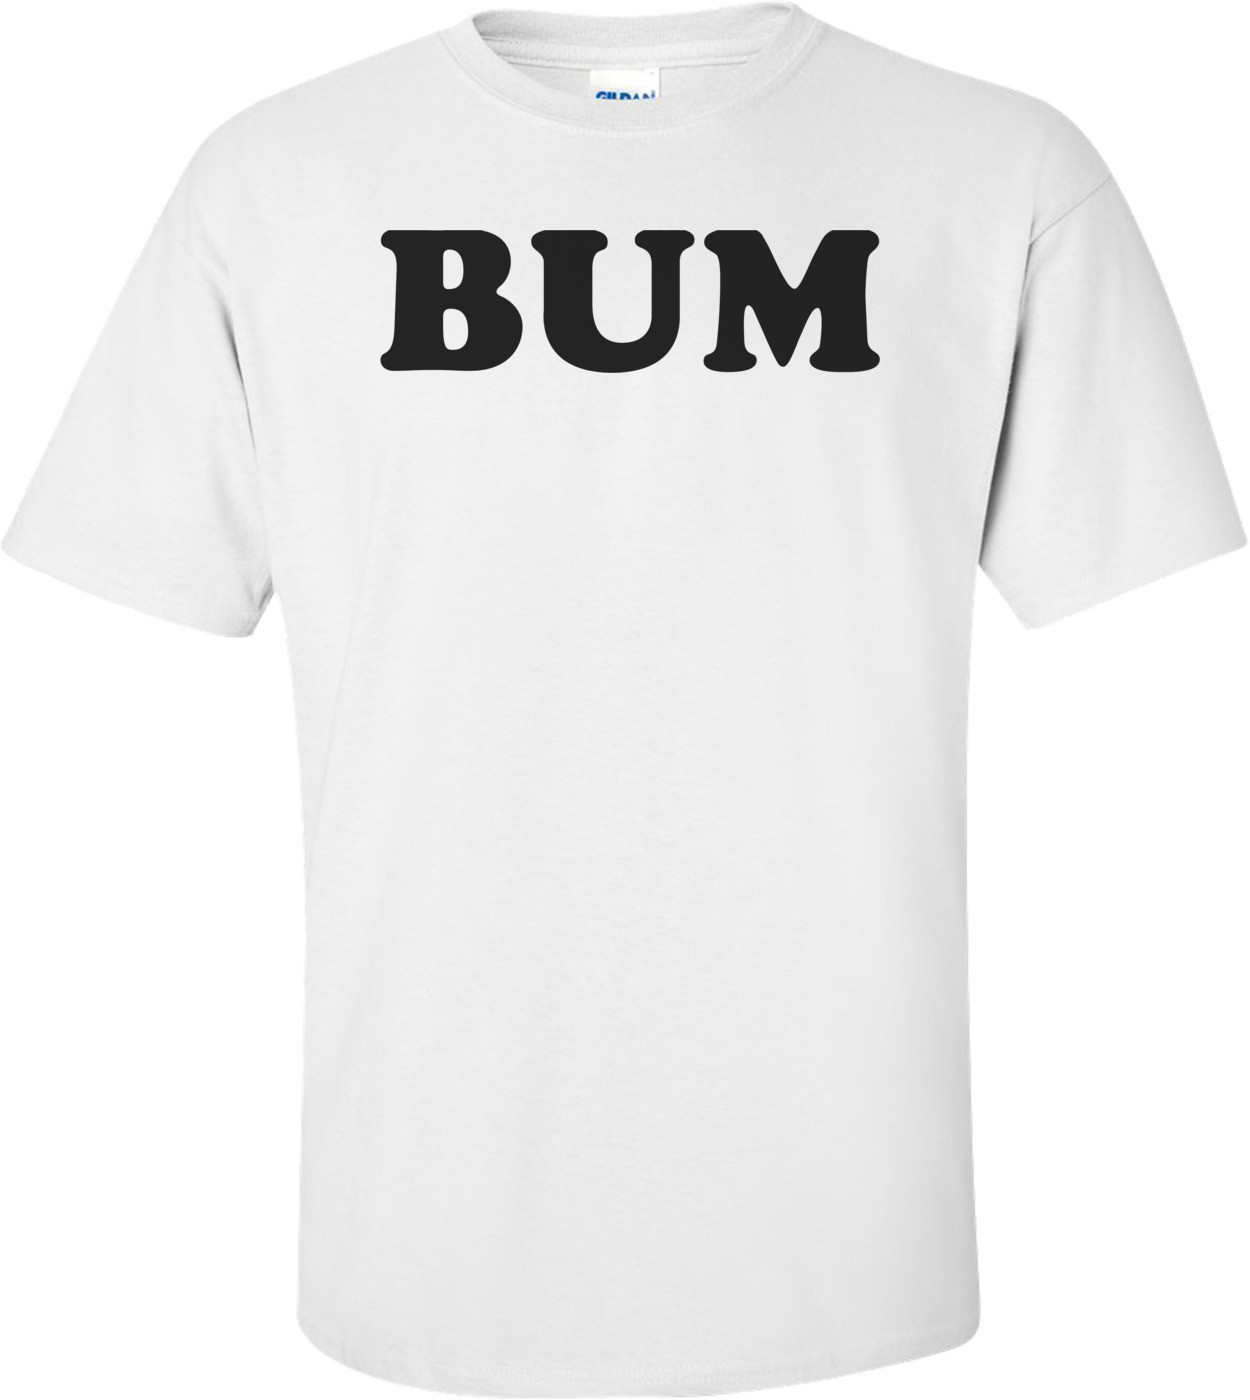 BUM T-Shirt